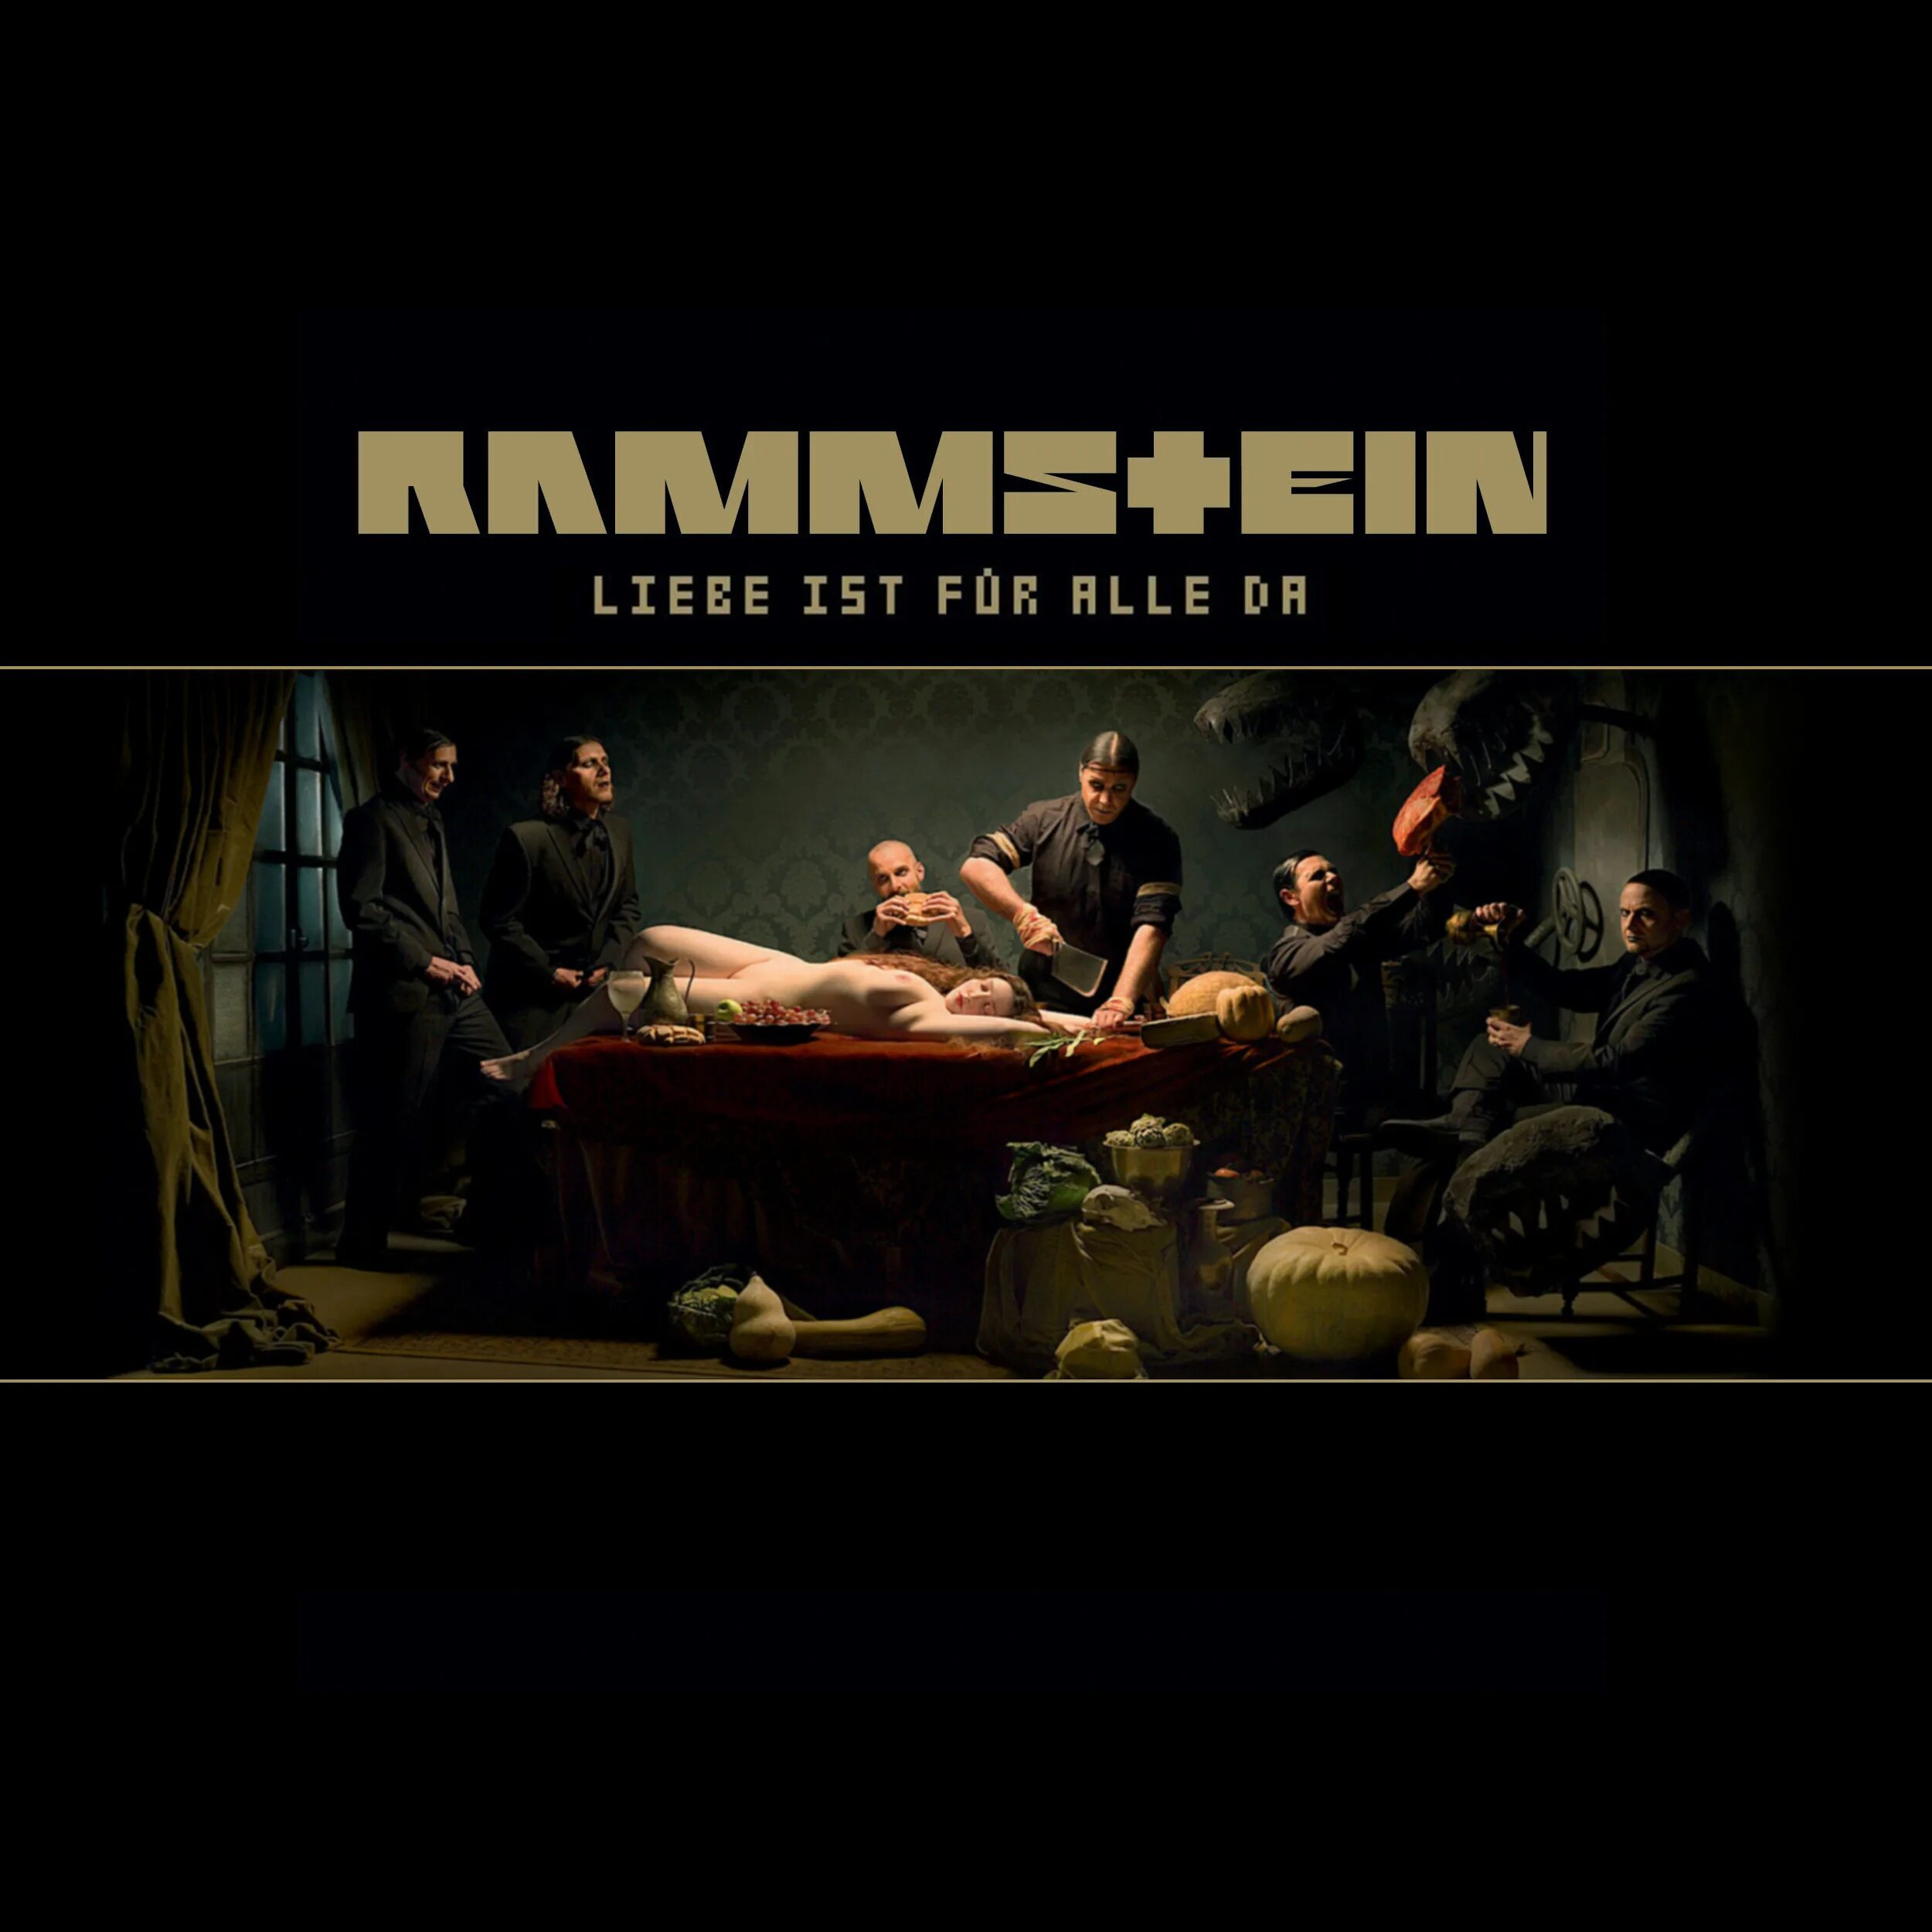 Das ist rammstein. LIFAD Rammstein обложка. Rammstein Donaukinder обложка. Rammstein Liebe ist fur alle da обложка. Обложка альбома Rammstein--2009-Liebe ist fur alle da.